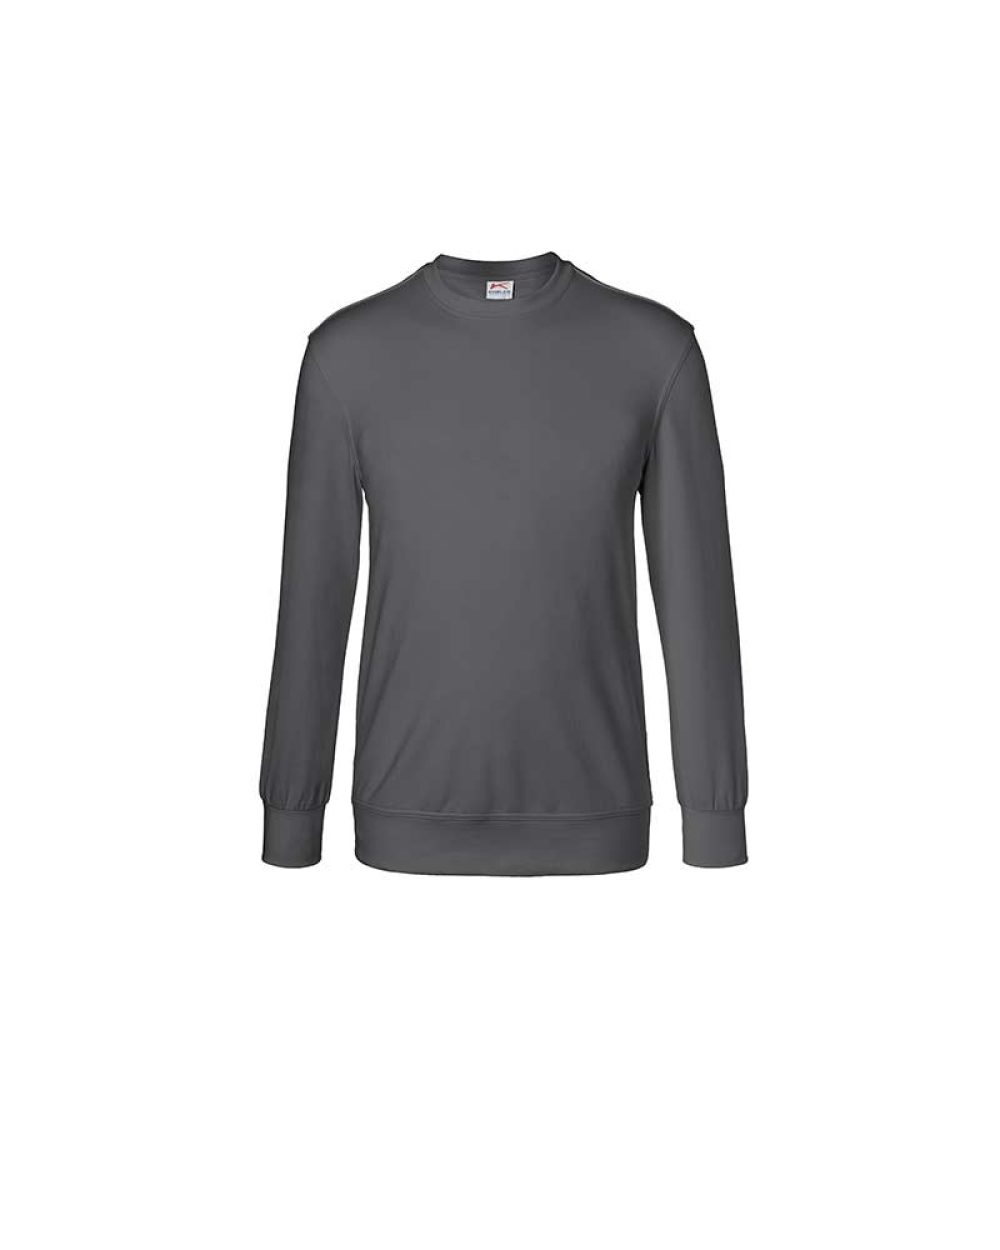 kuebler-sweatshirt-shirts-5023-6330-97